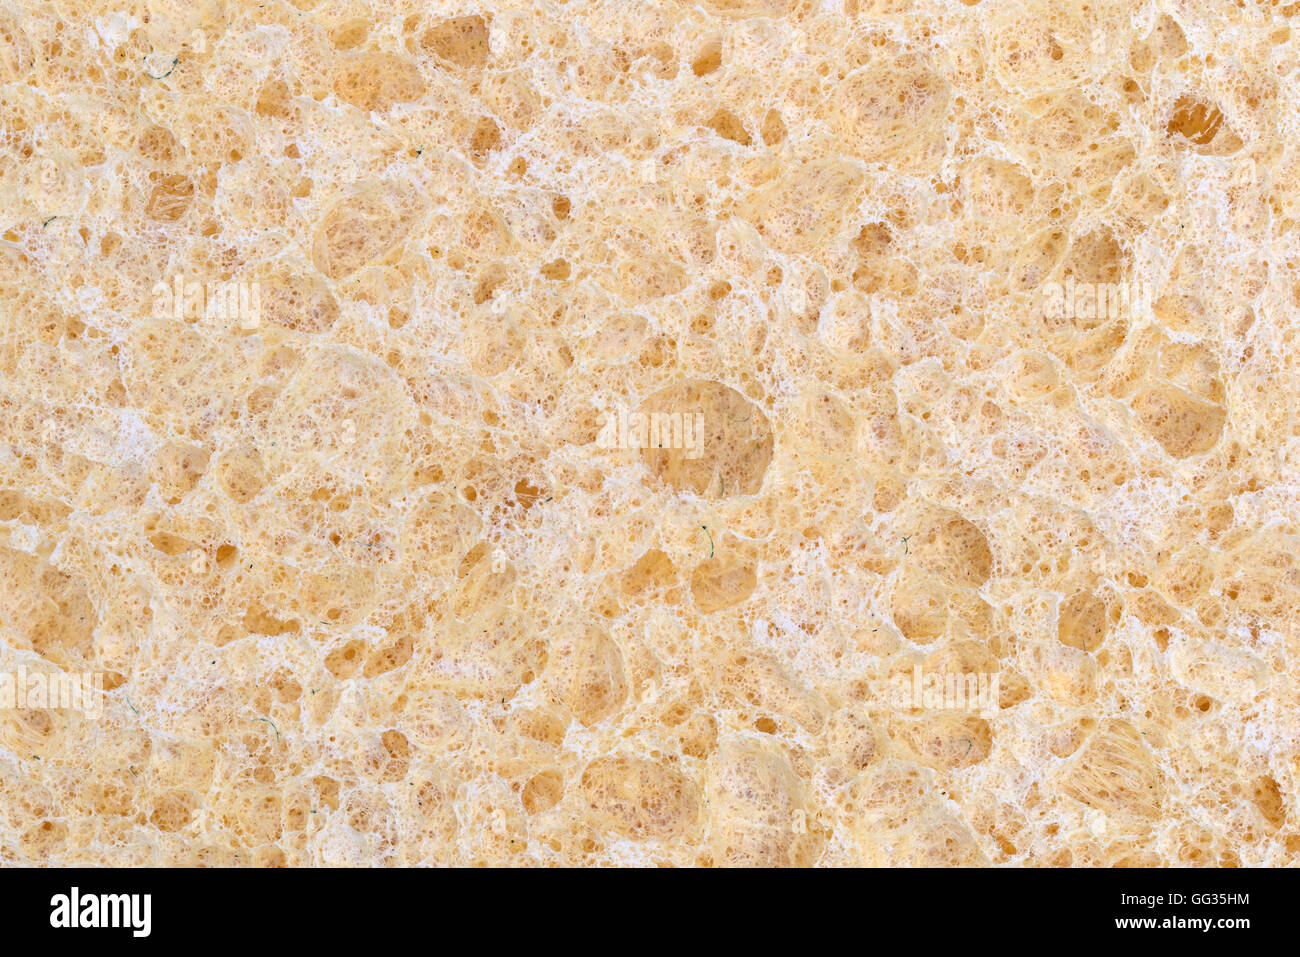 Una vista muy estrecha de una esponja de celulosa. Foto de stock